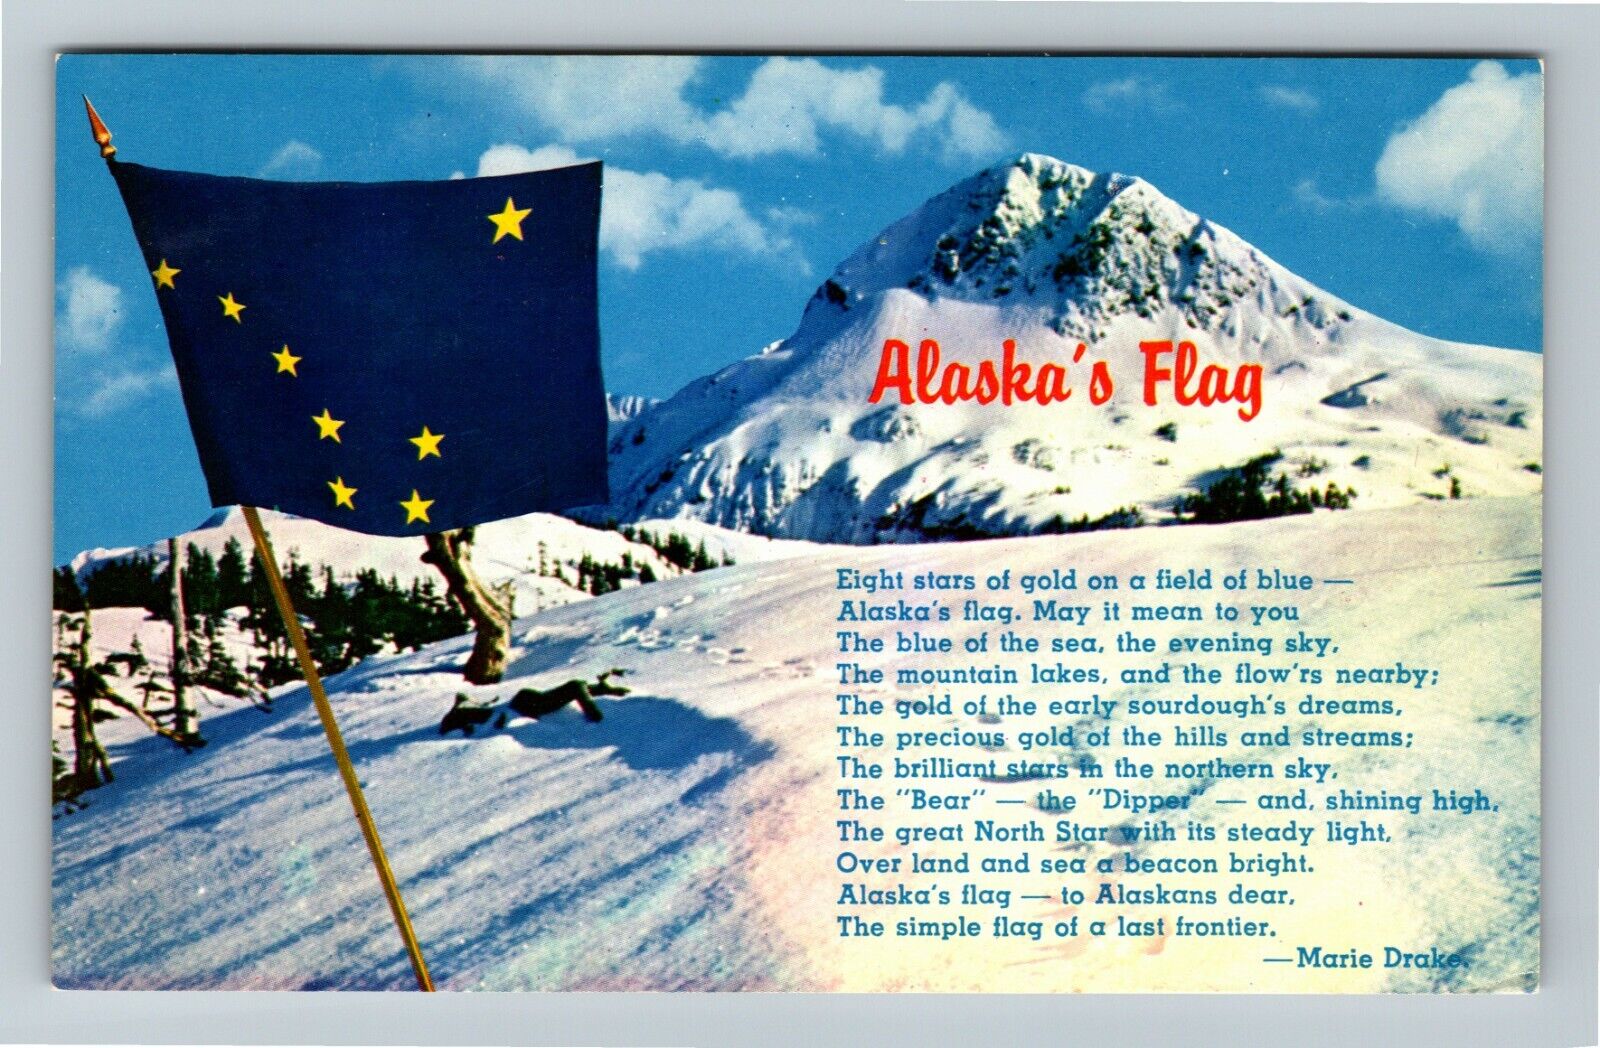 AK-Alaska\'s Flag 49th State Song Lyrics by Marie Drake Vintage Souvenir Postcard